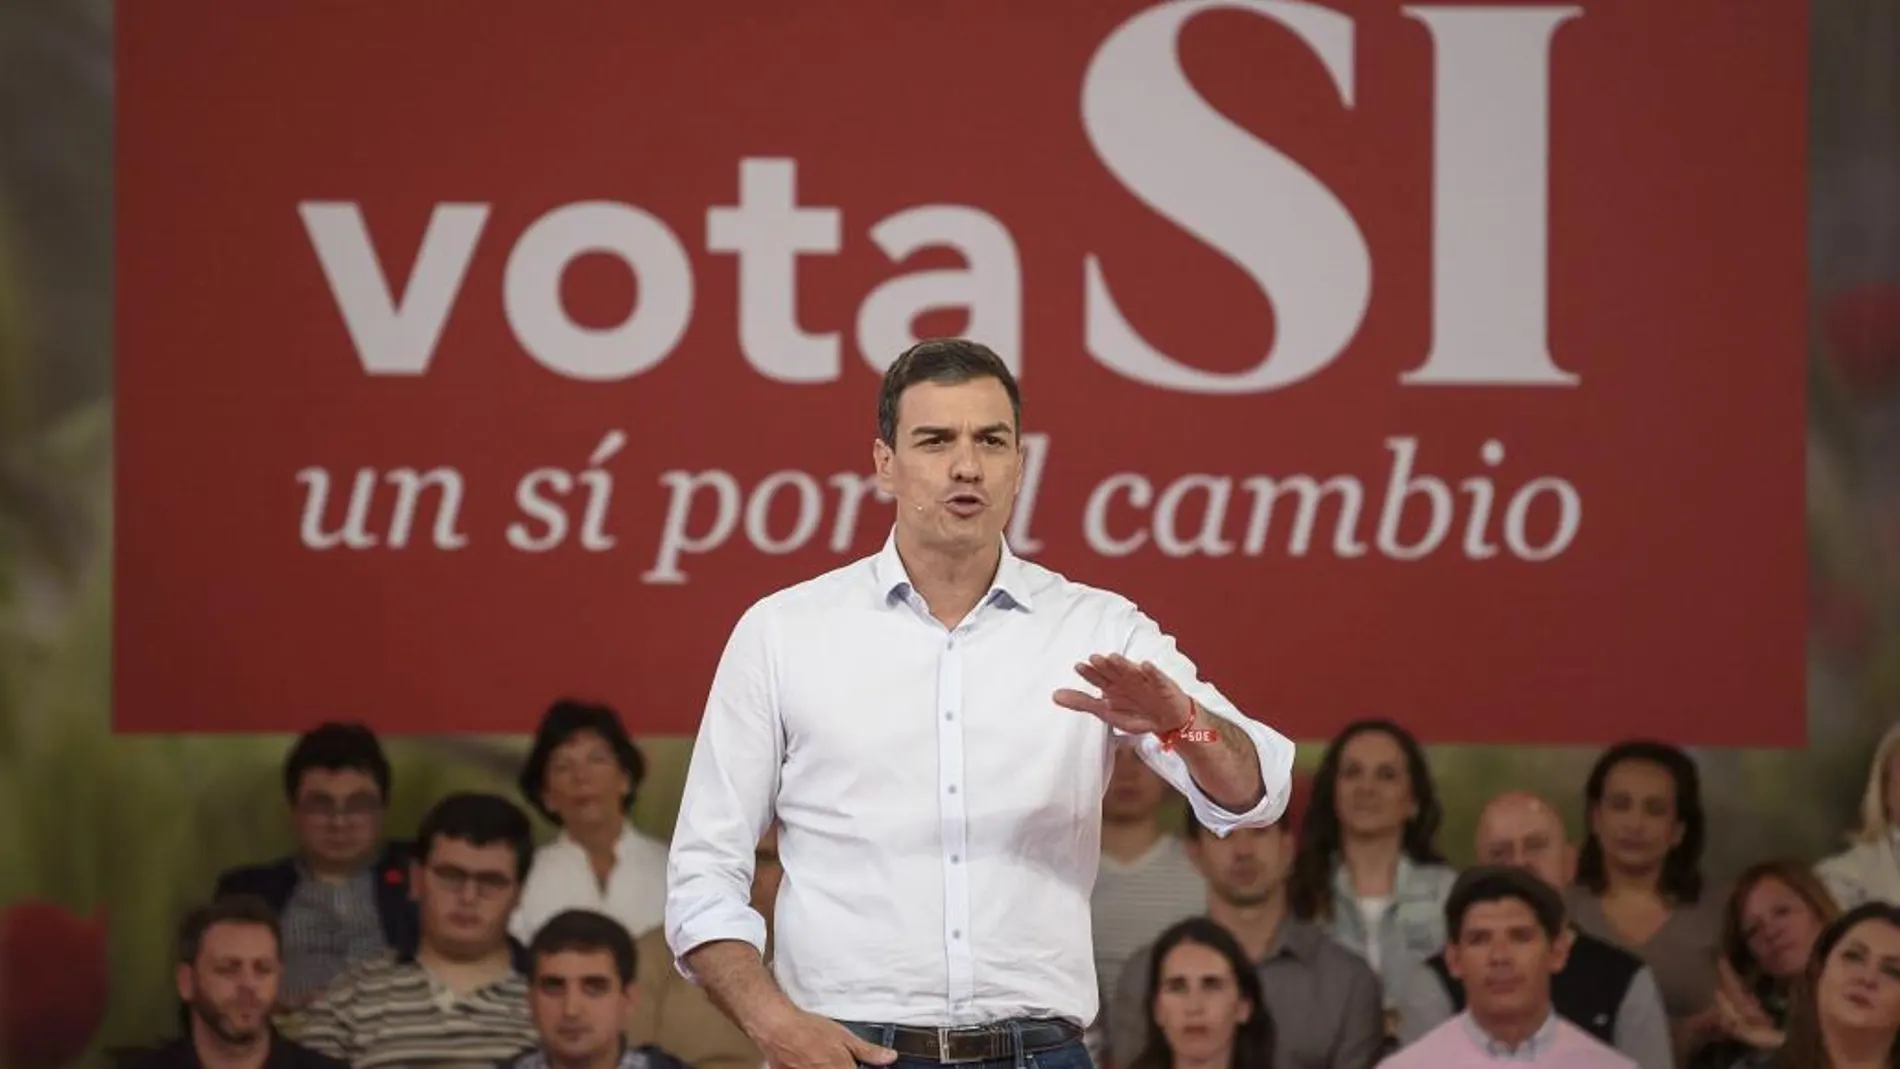 El secretario general de los socialistas, Pedro Sánchez